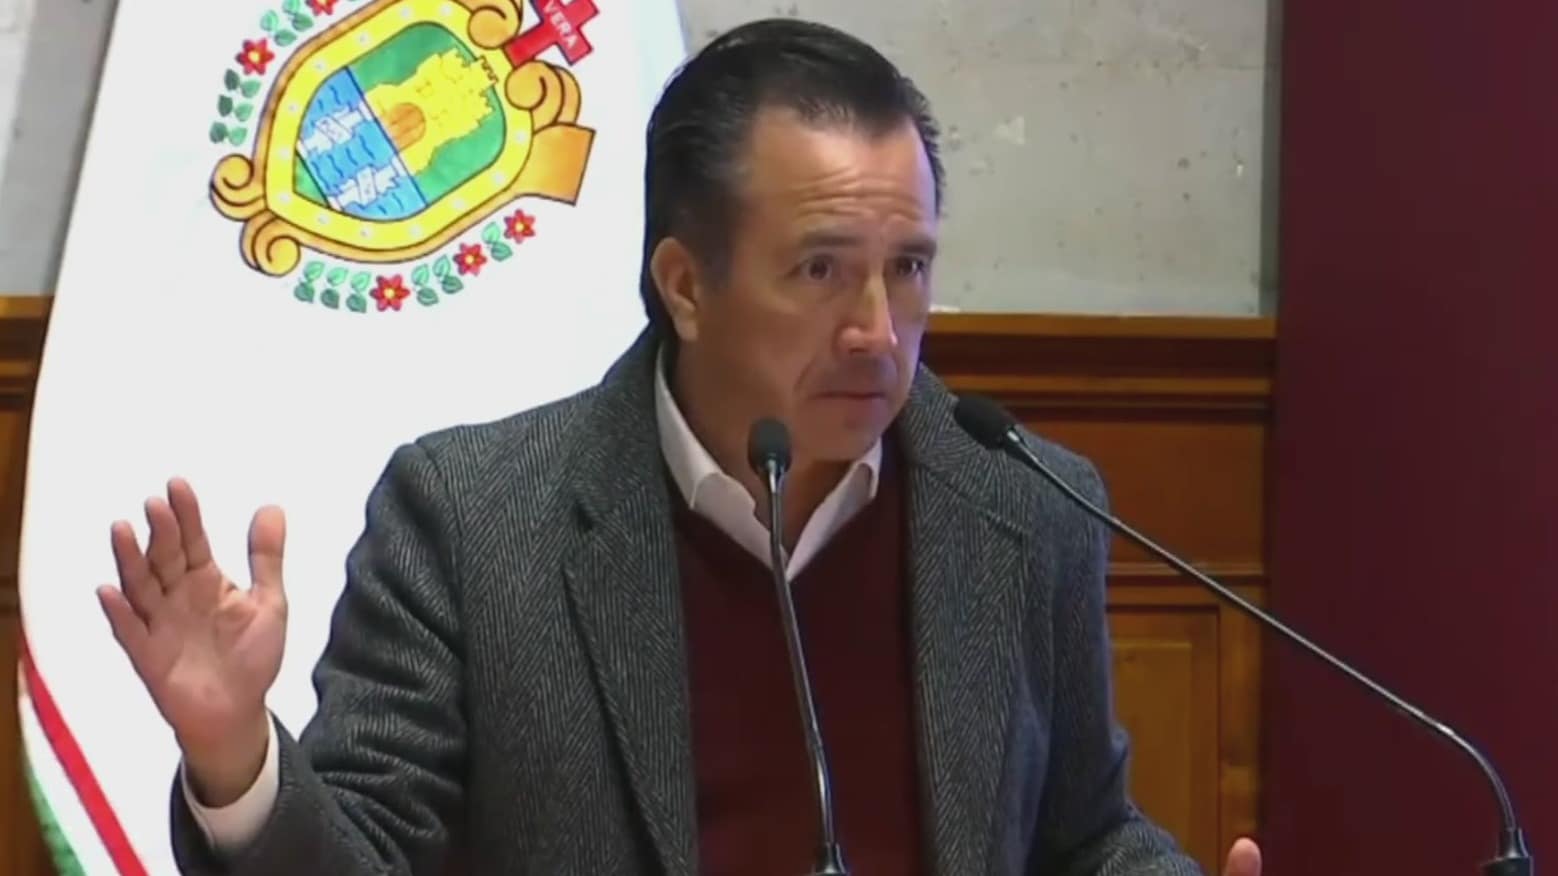 cuitlahuac garcia gobernador de veracruz confronta a periodista y la acusa de mentir